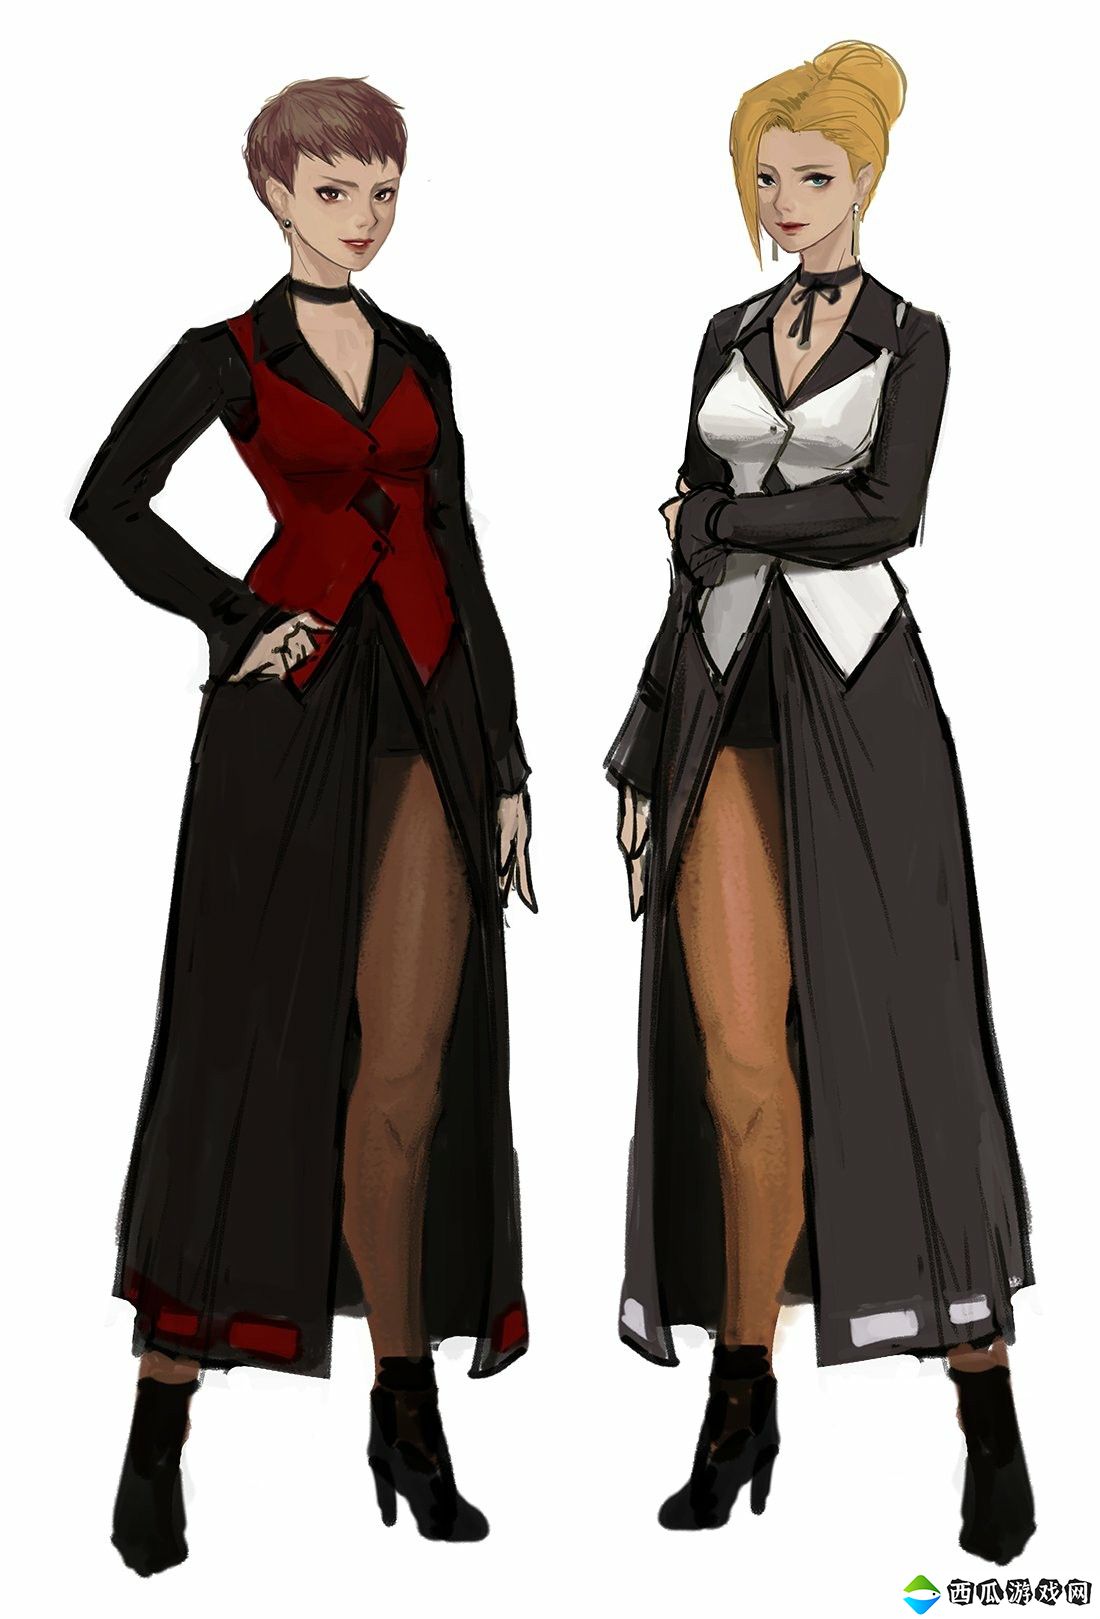 《拳皇15》新DLC角色预热 或是美女秘书麦卓和薇丝